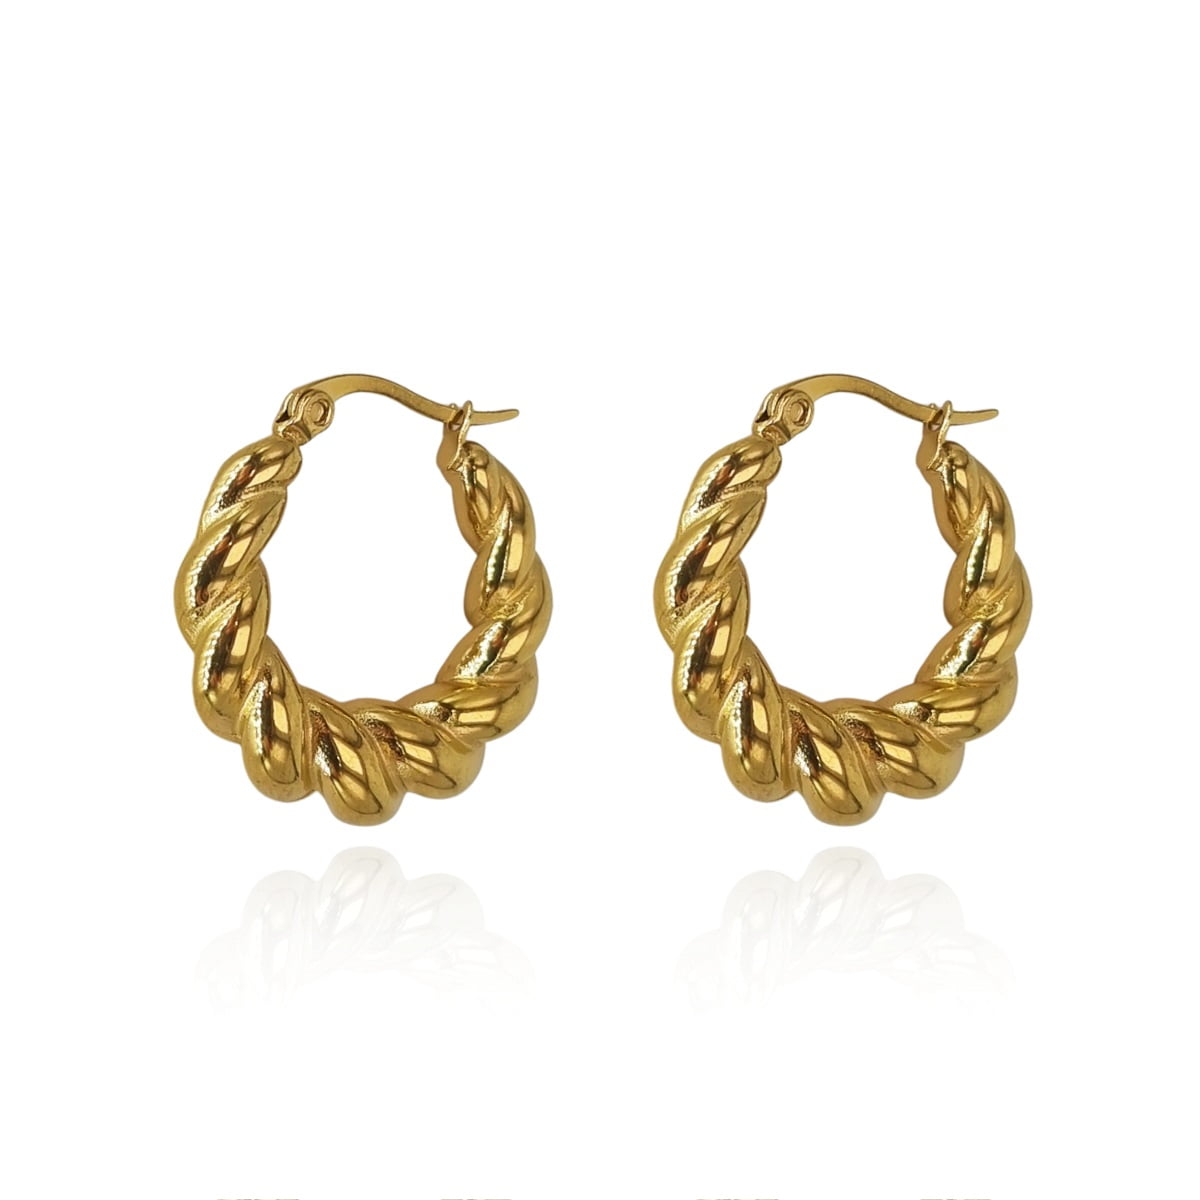 Σκουλαρίκια Alessandra από ανοξείδωτο ατσάλι | ShopShop.gr σκουλαρίκια κρίκοι με στριφτό σχέδιο χρυσοί κρίκοι κρεμαστά κρικάκια